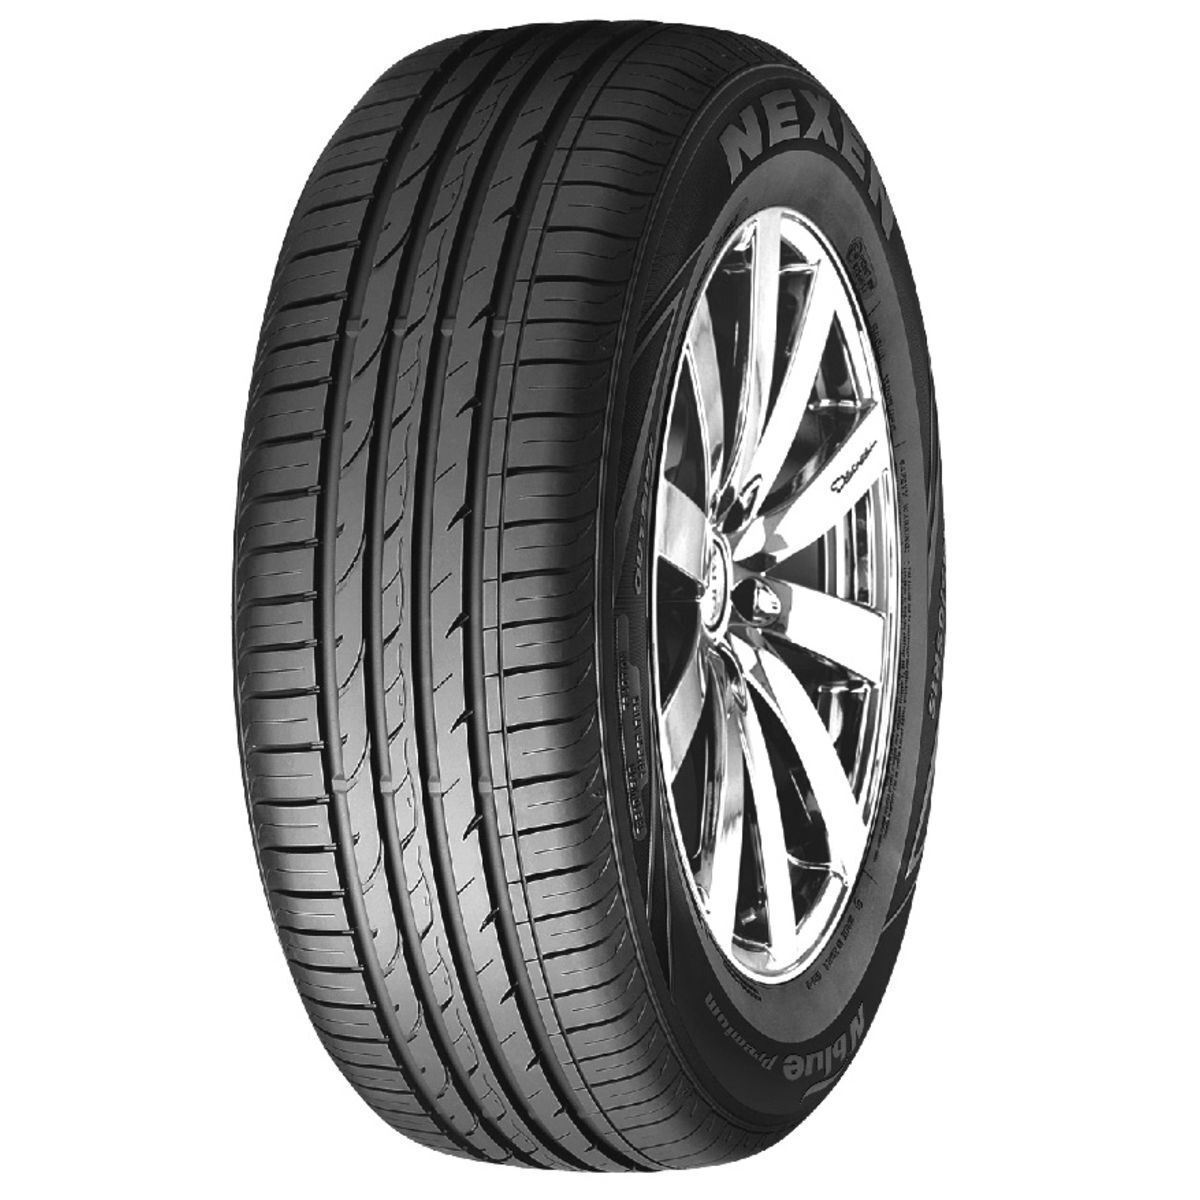 Neumáticos de verano NEXEN NBlue Premium 195/65R15 91T